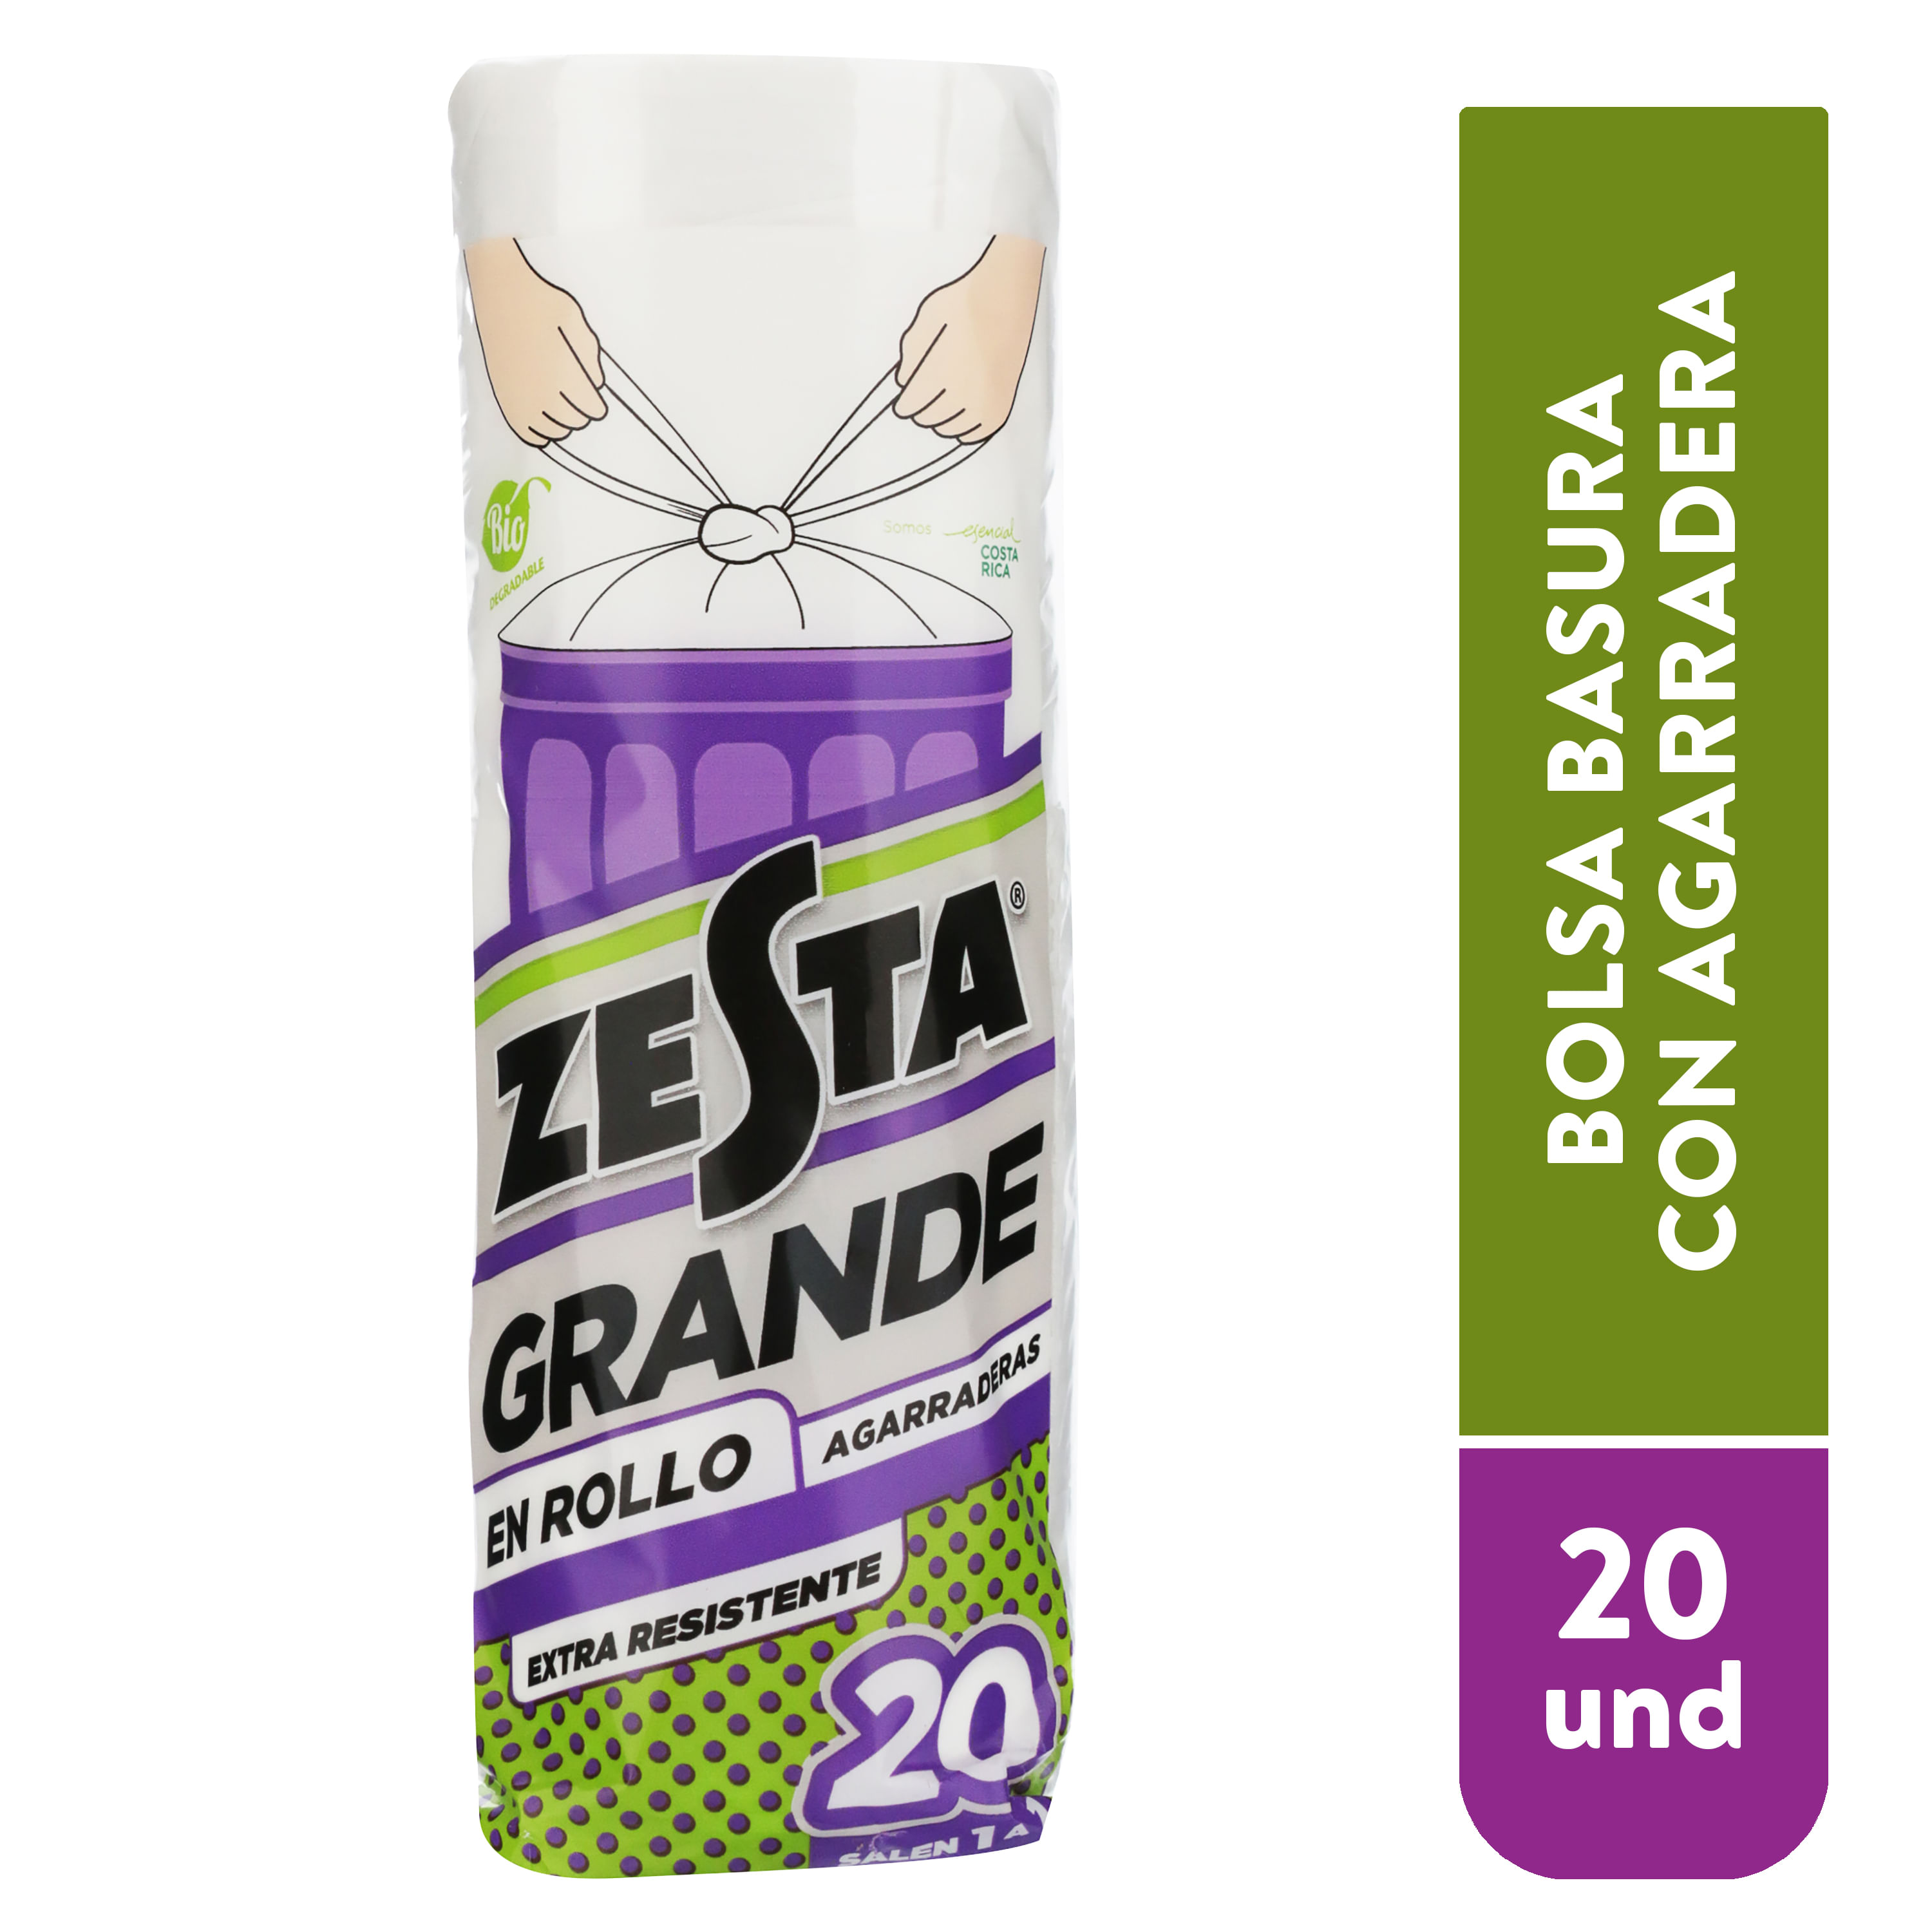 Zesta-Gde-Blanca-De-Agarradera-Roll-20U-1-64686